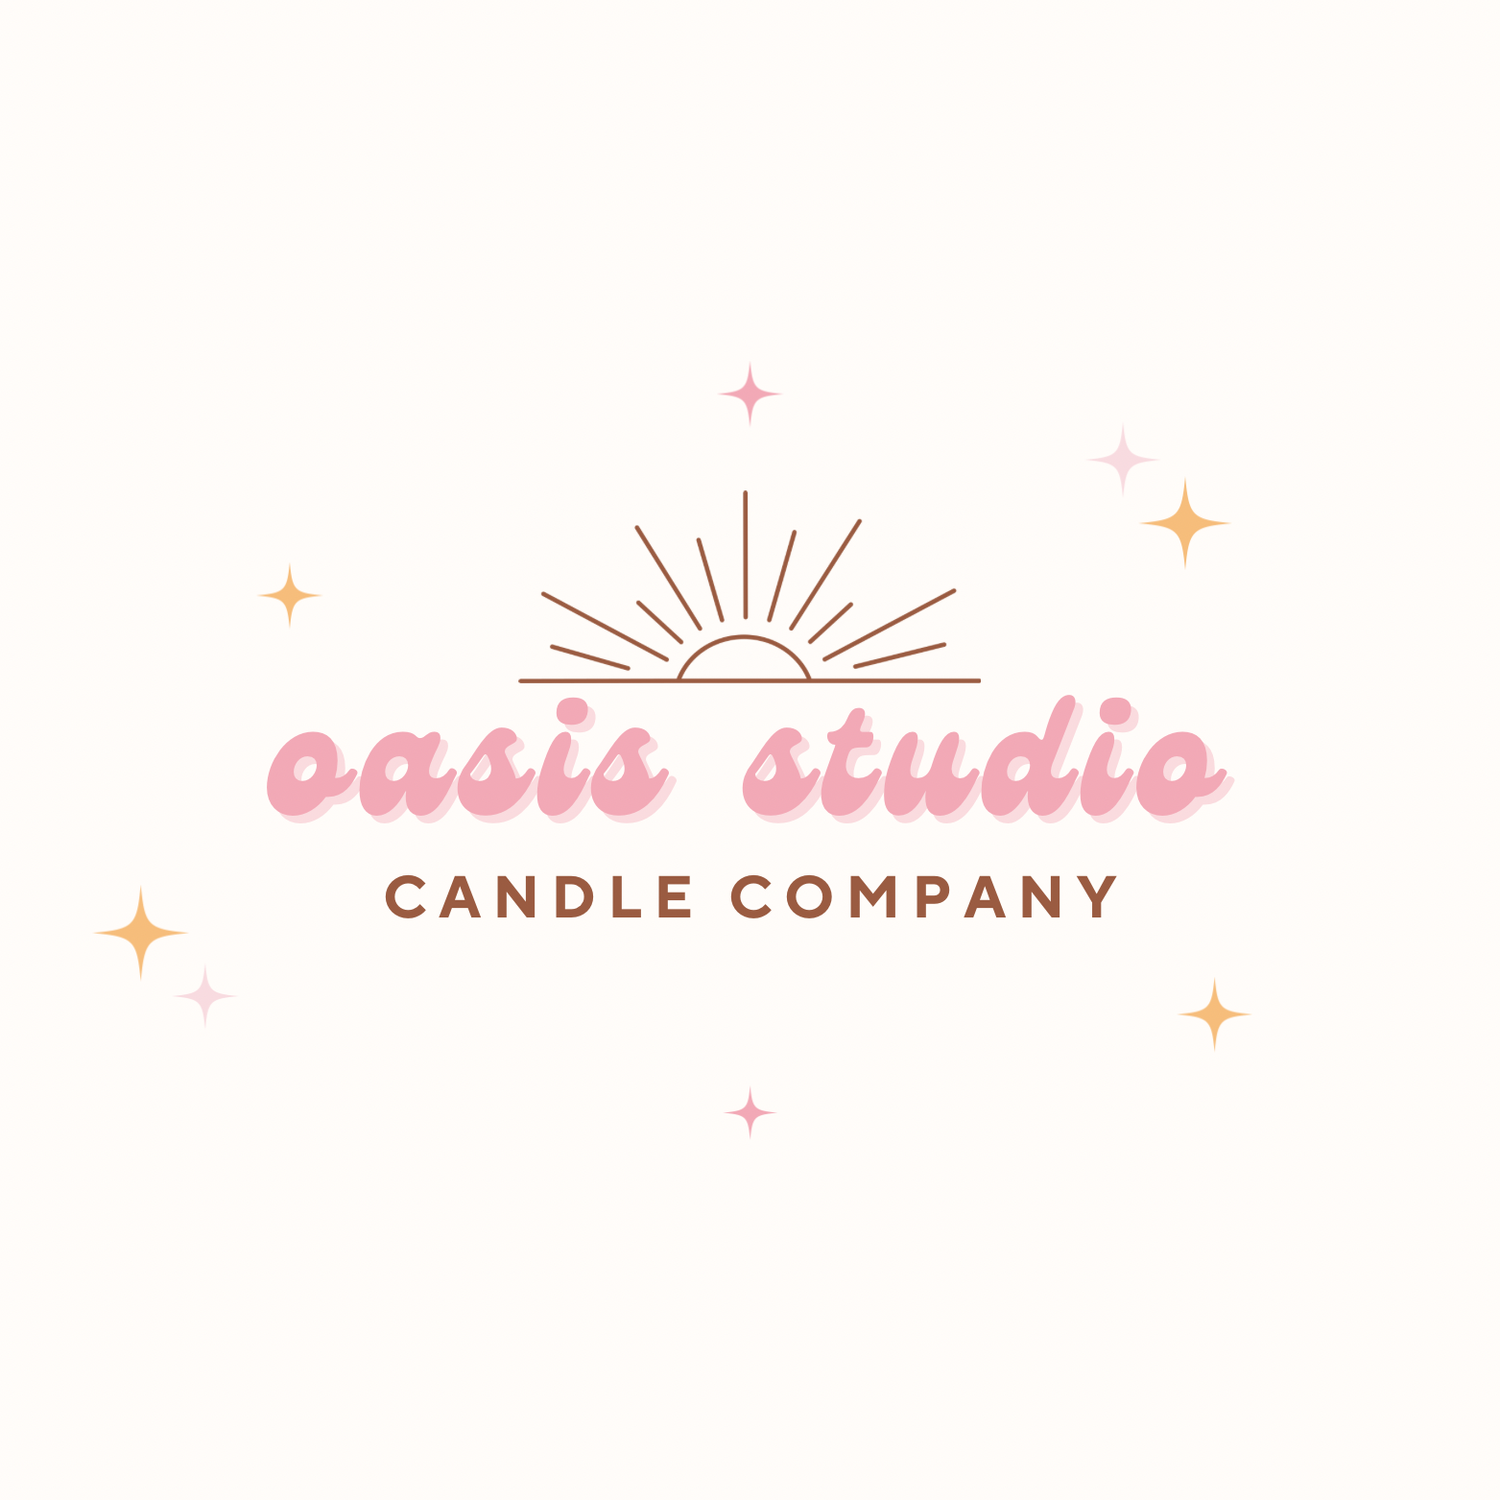 oasis studio candle co.